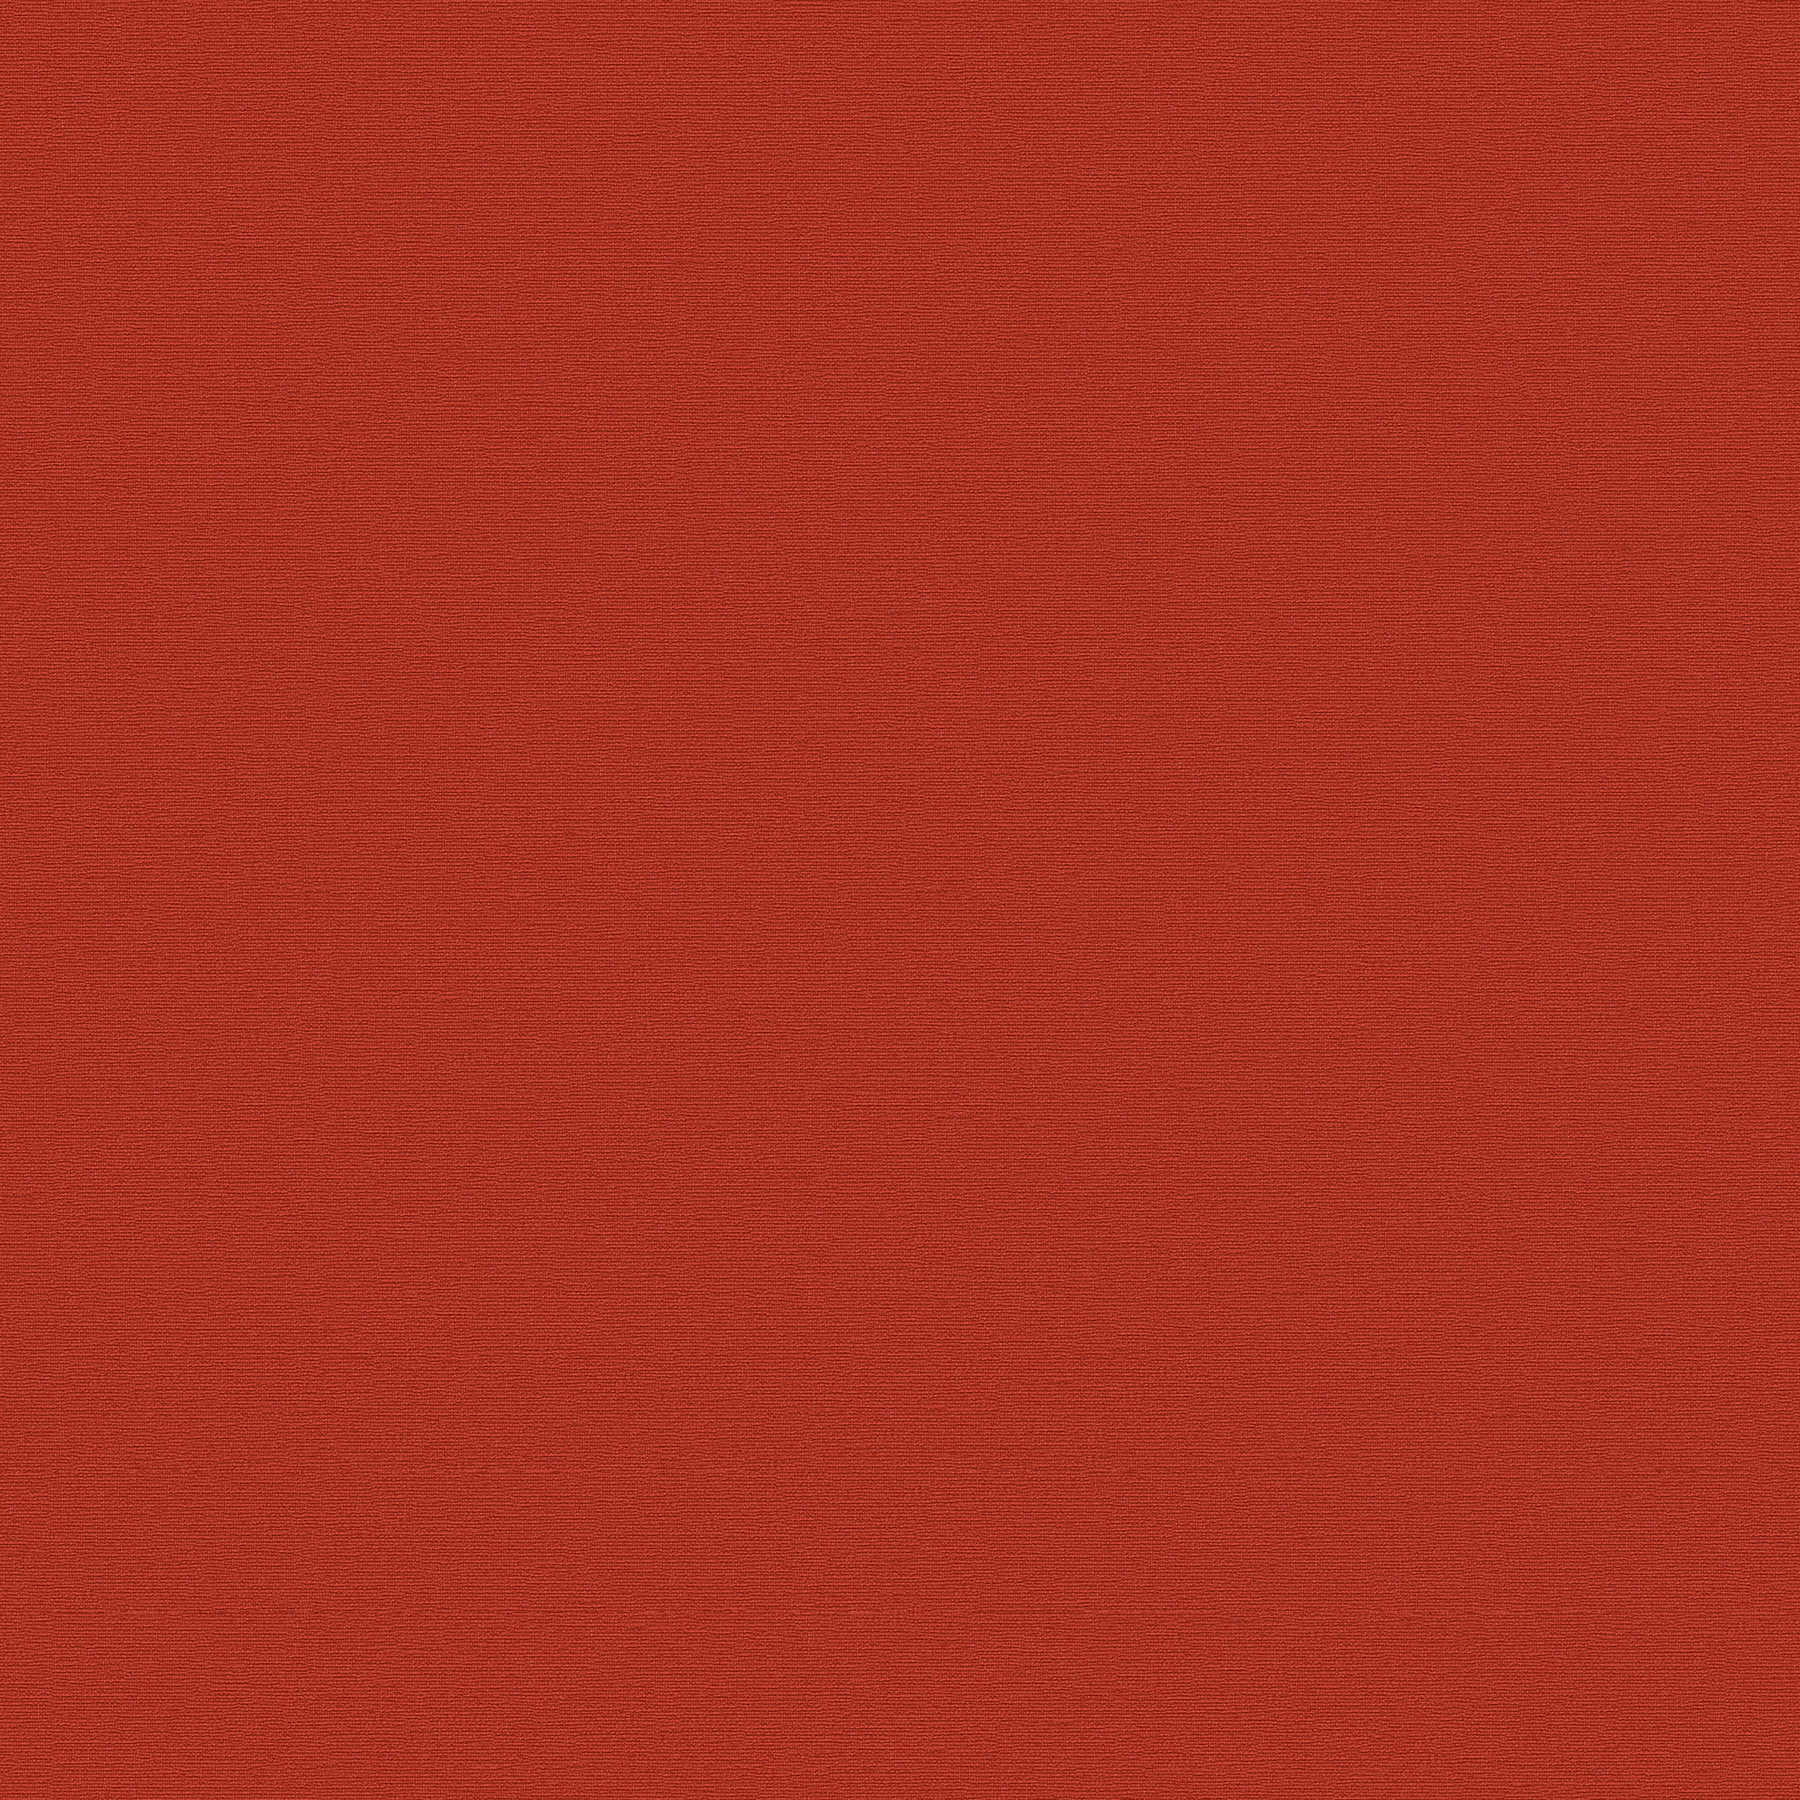             Einfarbige Unitapete mit leichter Struktur – Rot
        